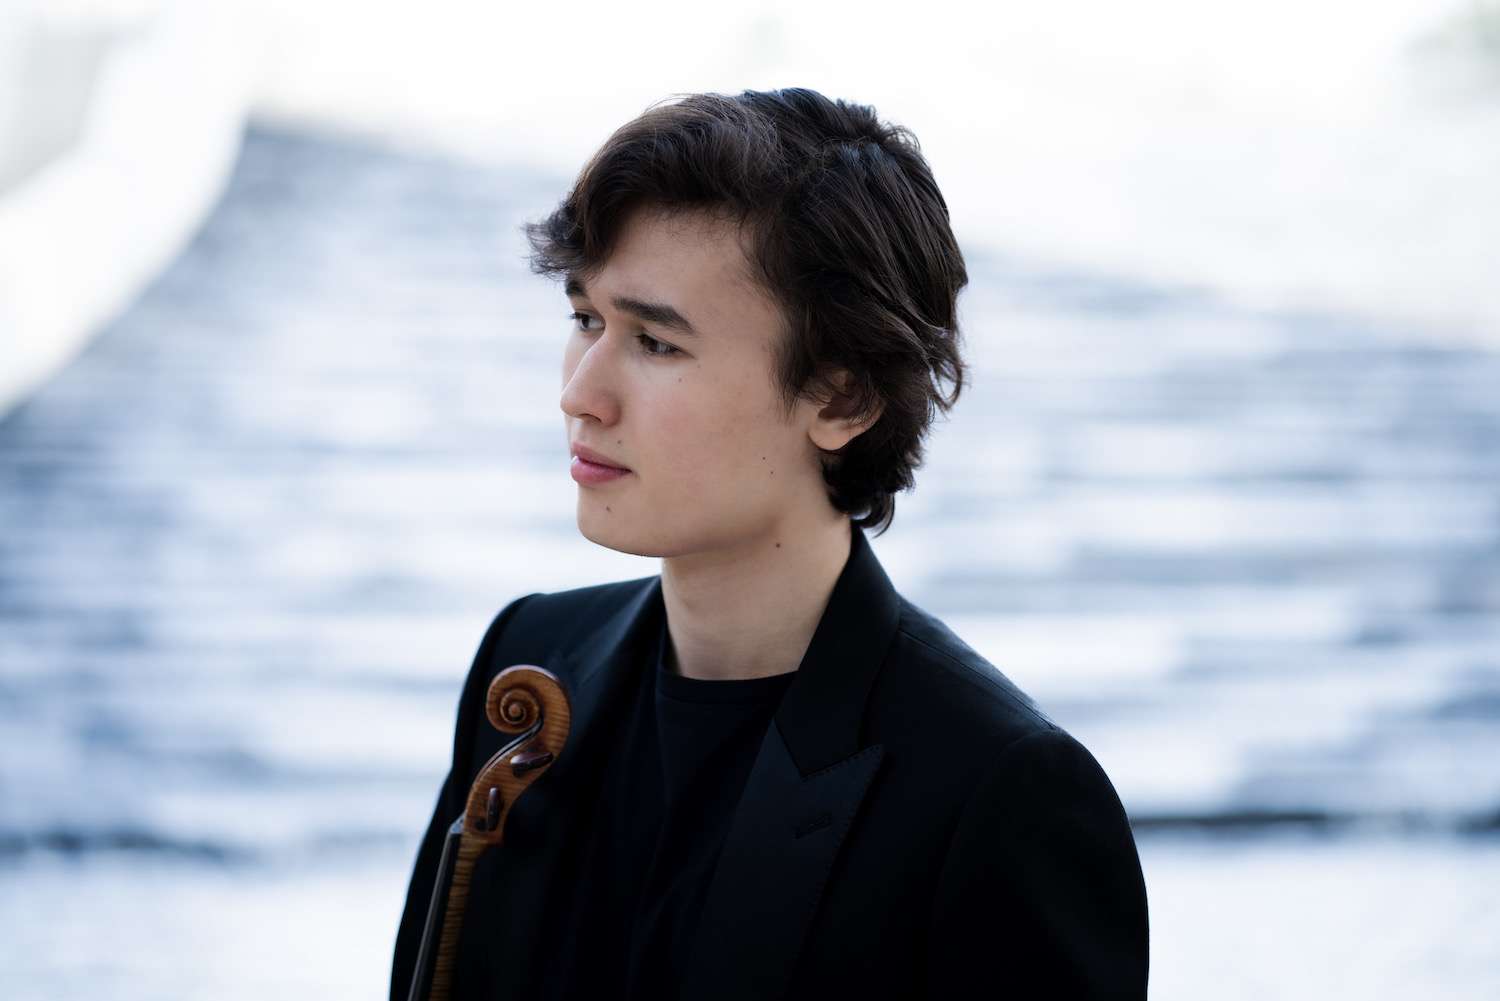 A Torino c’è Daniel Lozakovich il talento del violino che arriva dalla Svezia